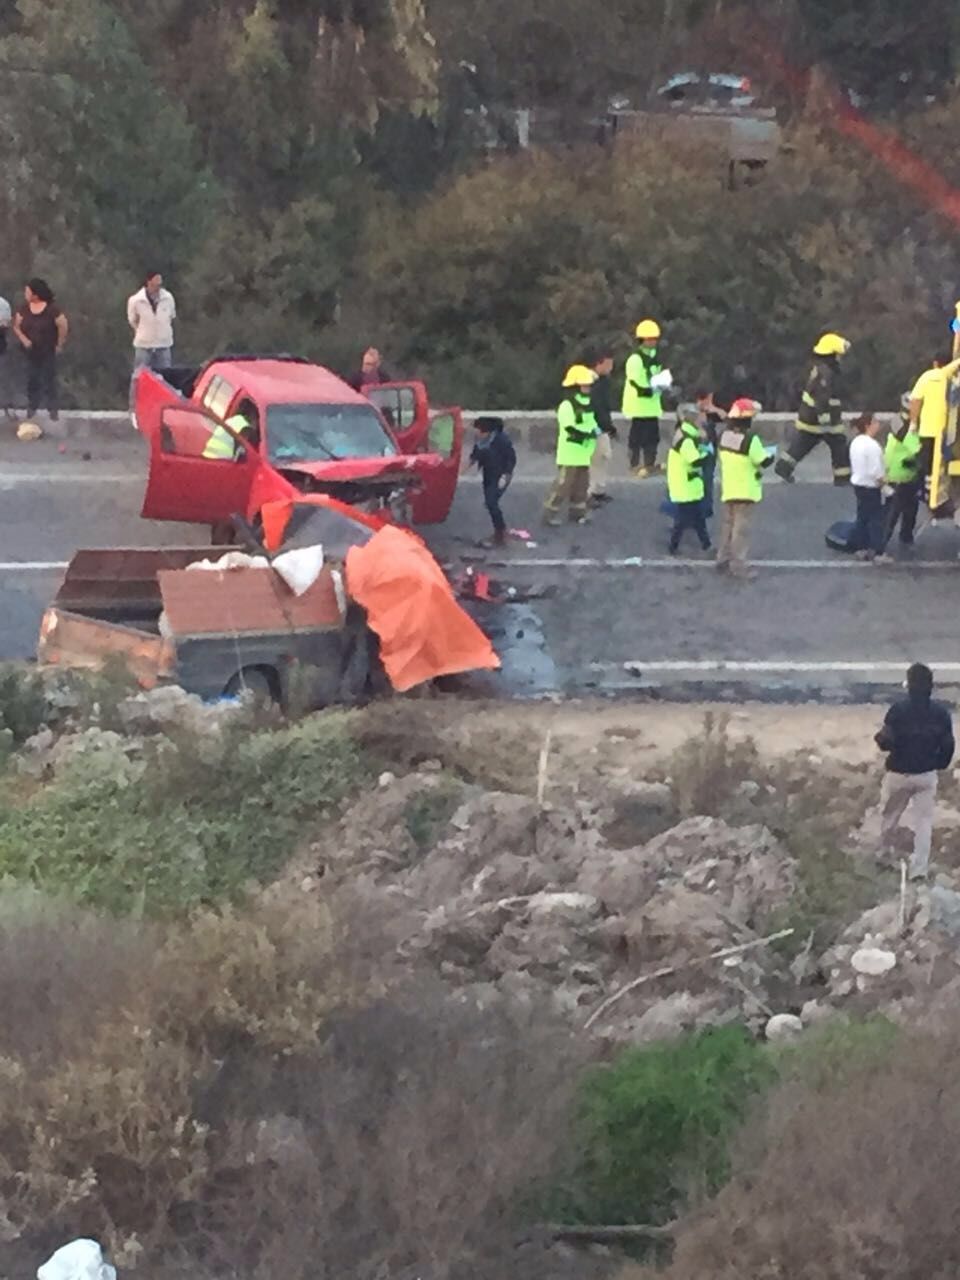 Dos muertos y 4 heridos dejó accidente en ruta que une Vallenar ... - BioBioChile (press release) (blog)